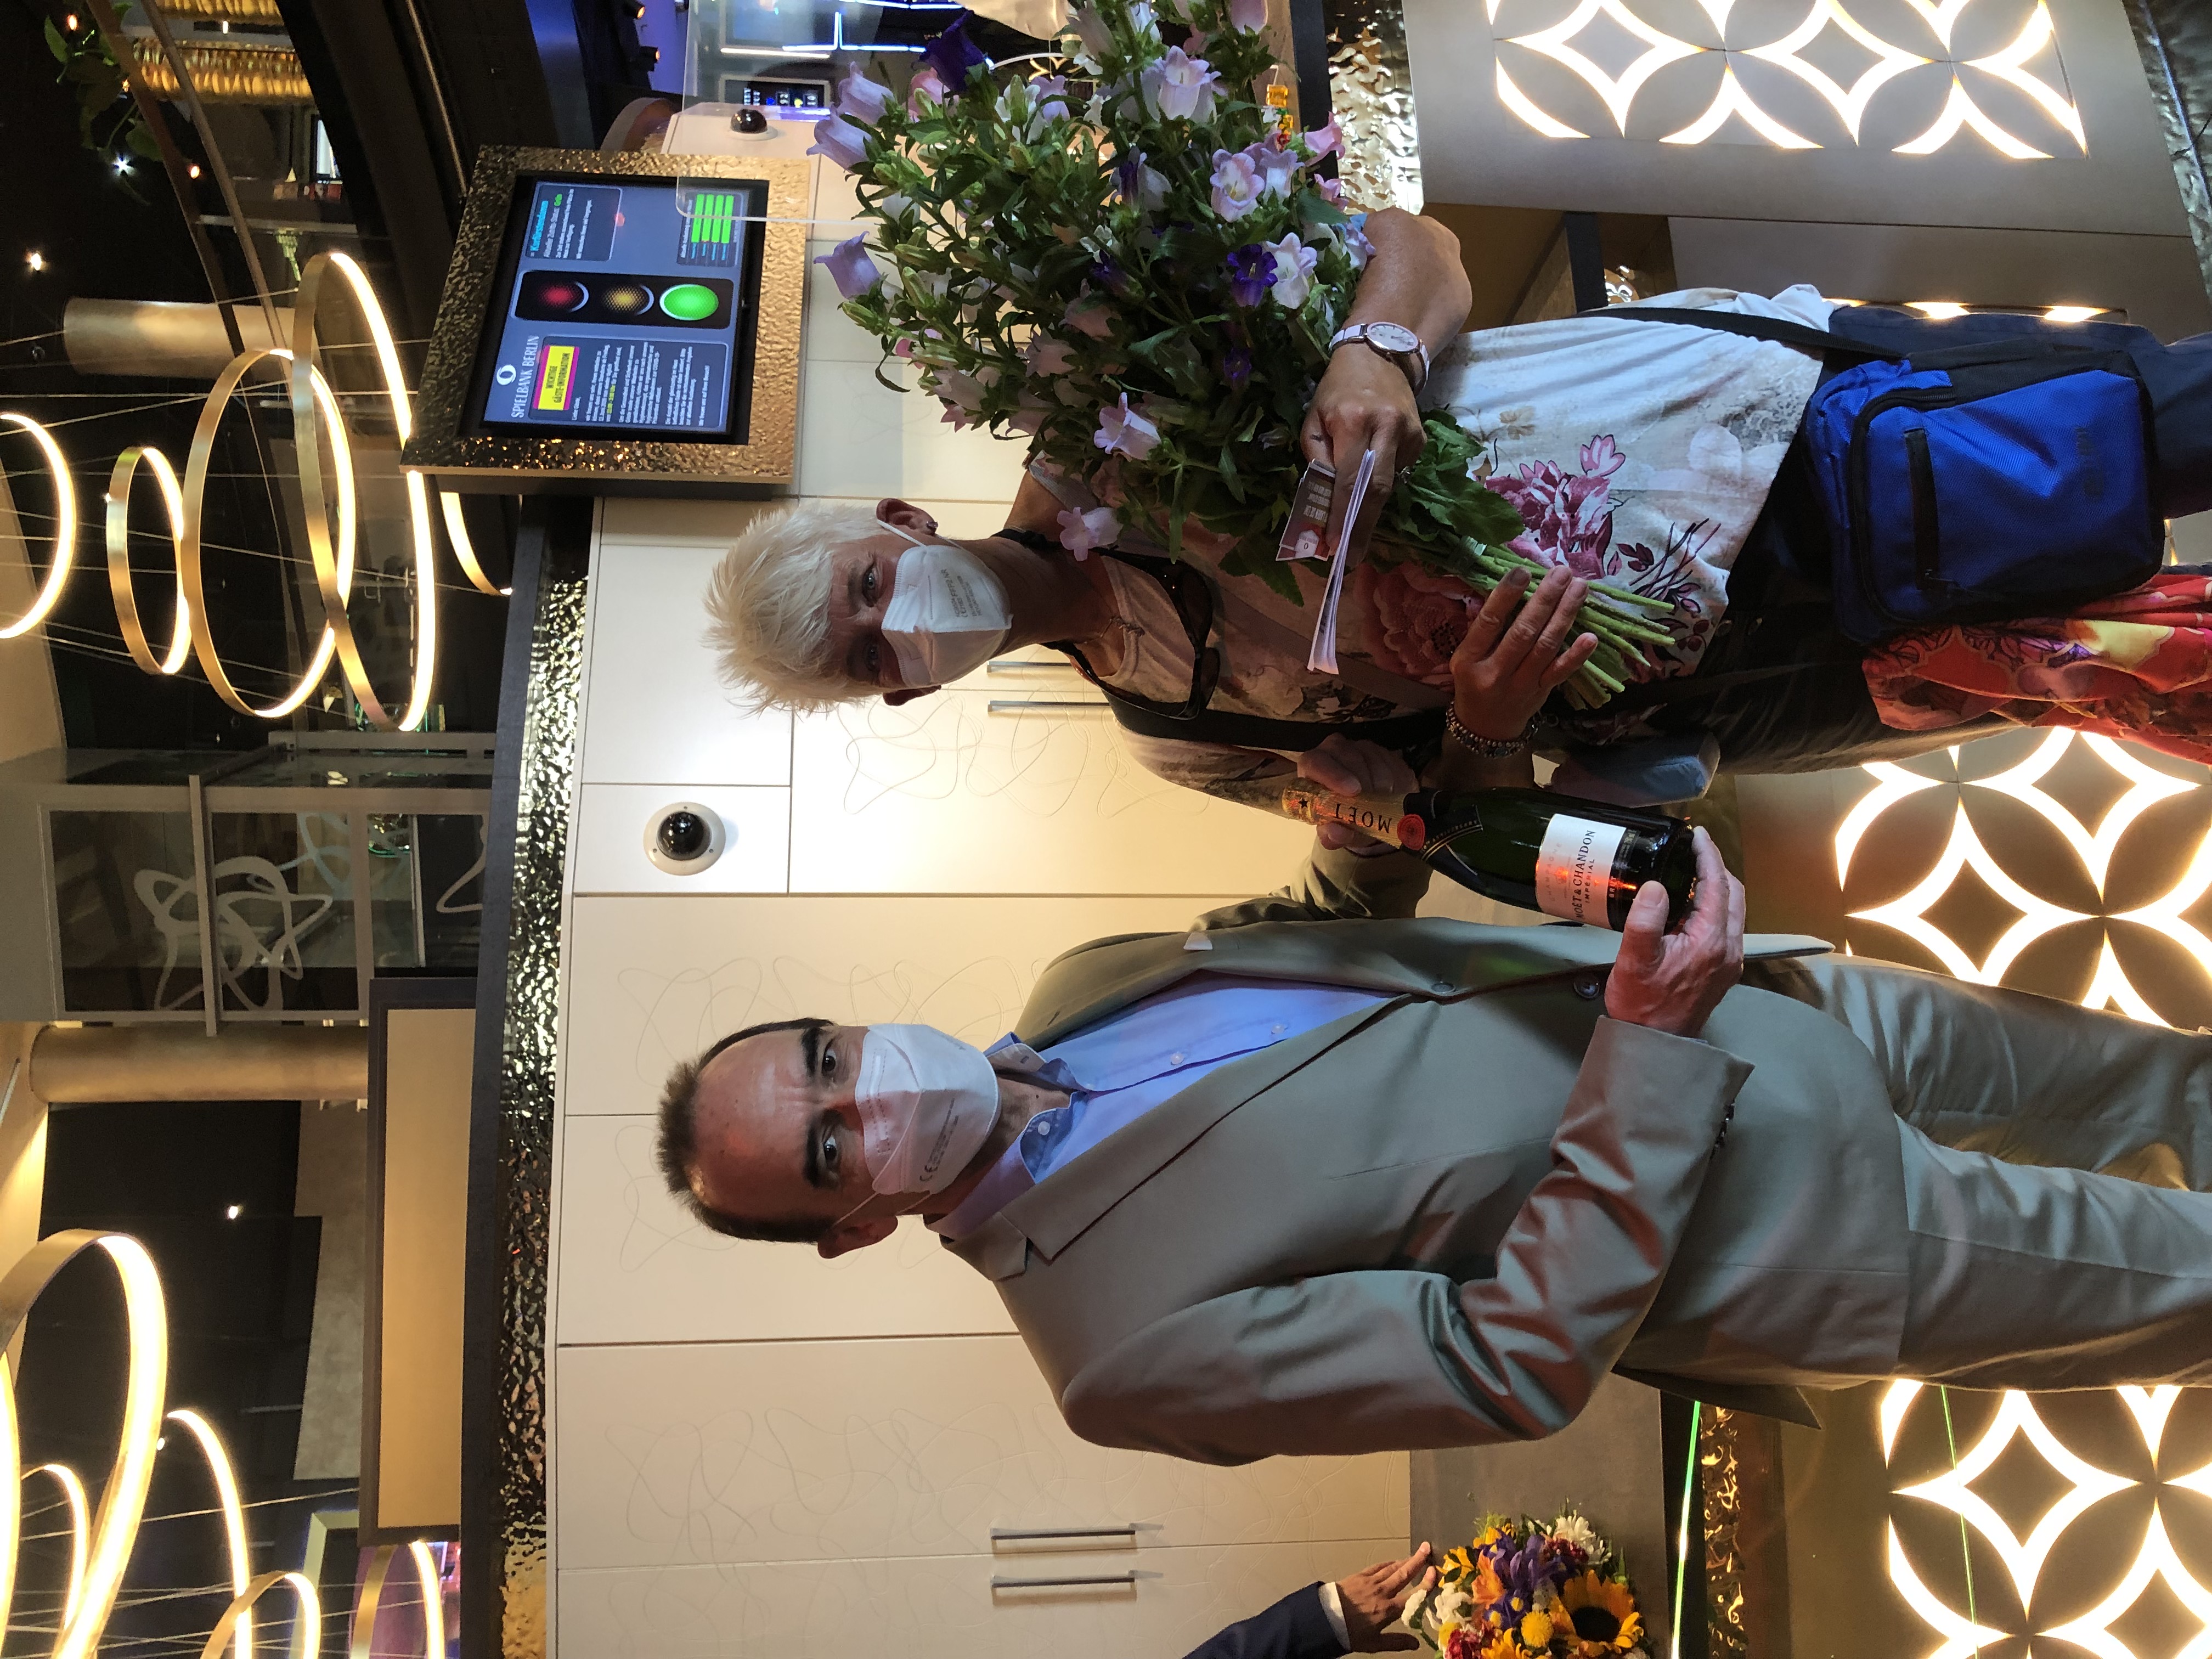 Spielbank-Chef Gerhard Wilhelm begrüßt die erste Besucherin am neuen Standort am Kurfürstendamm persönlich mit einem Blumenstrauß und einer Flasche Champagner. Foto: Spielbank Berlin